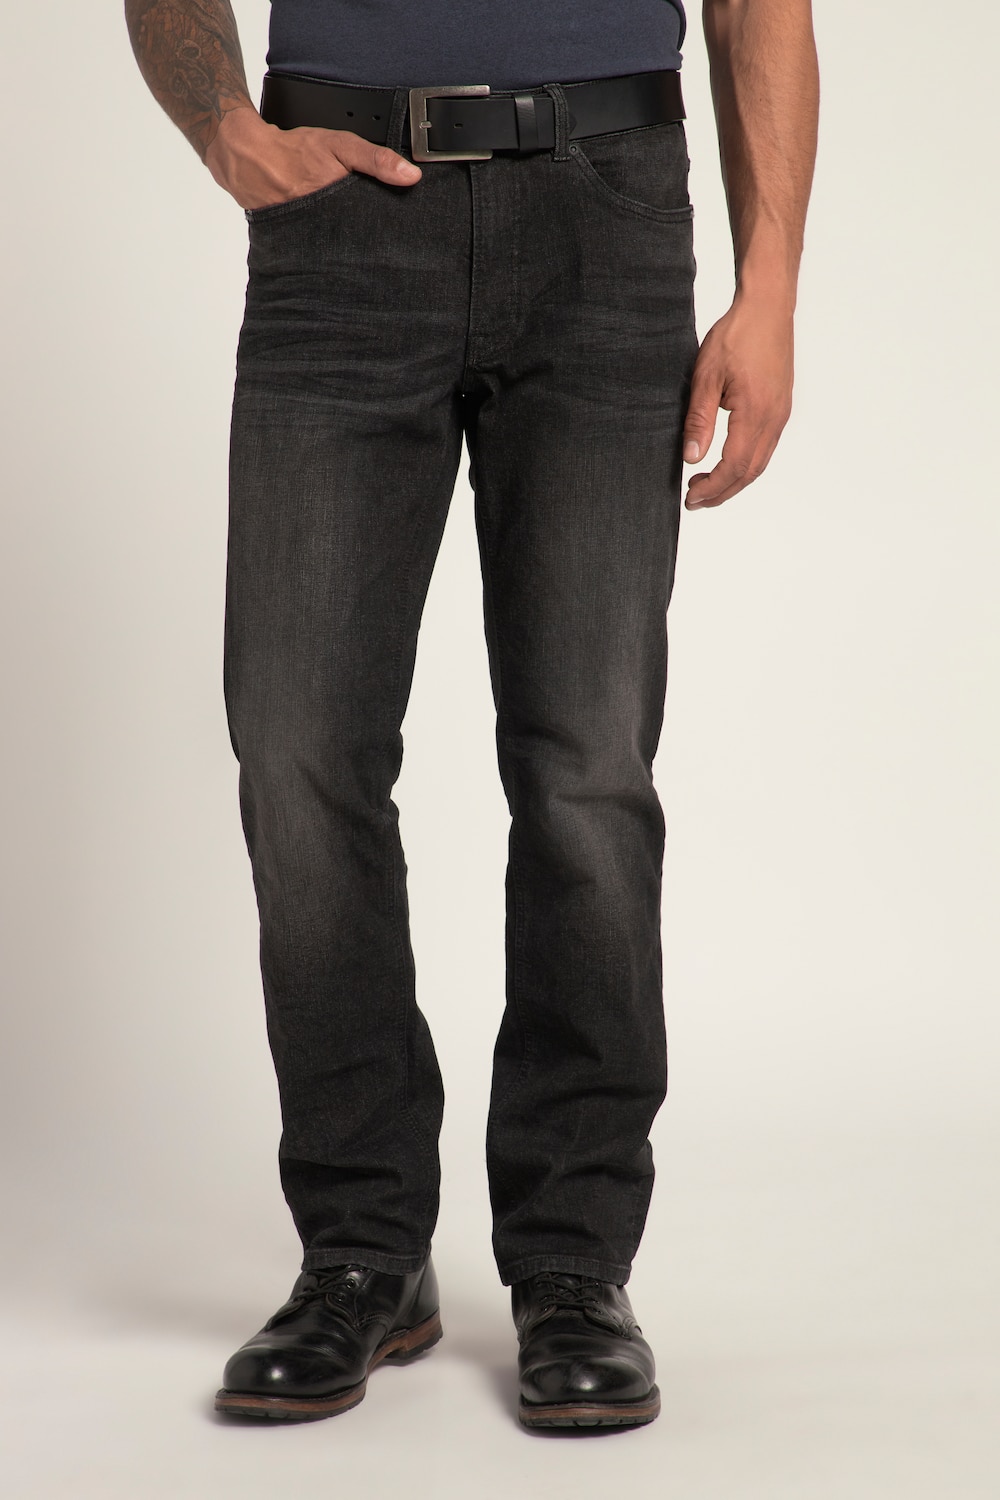 Grote Maten Jeans, Heren, zwart, Maat: 62, Katoen, JP1880